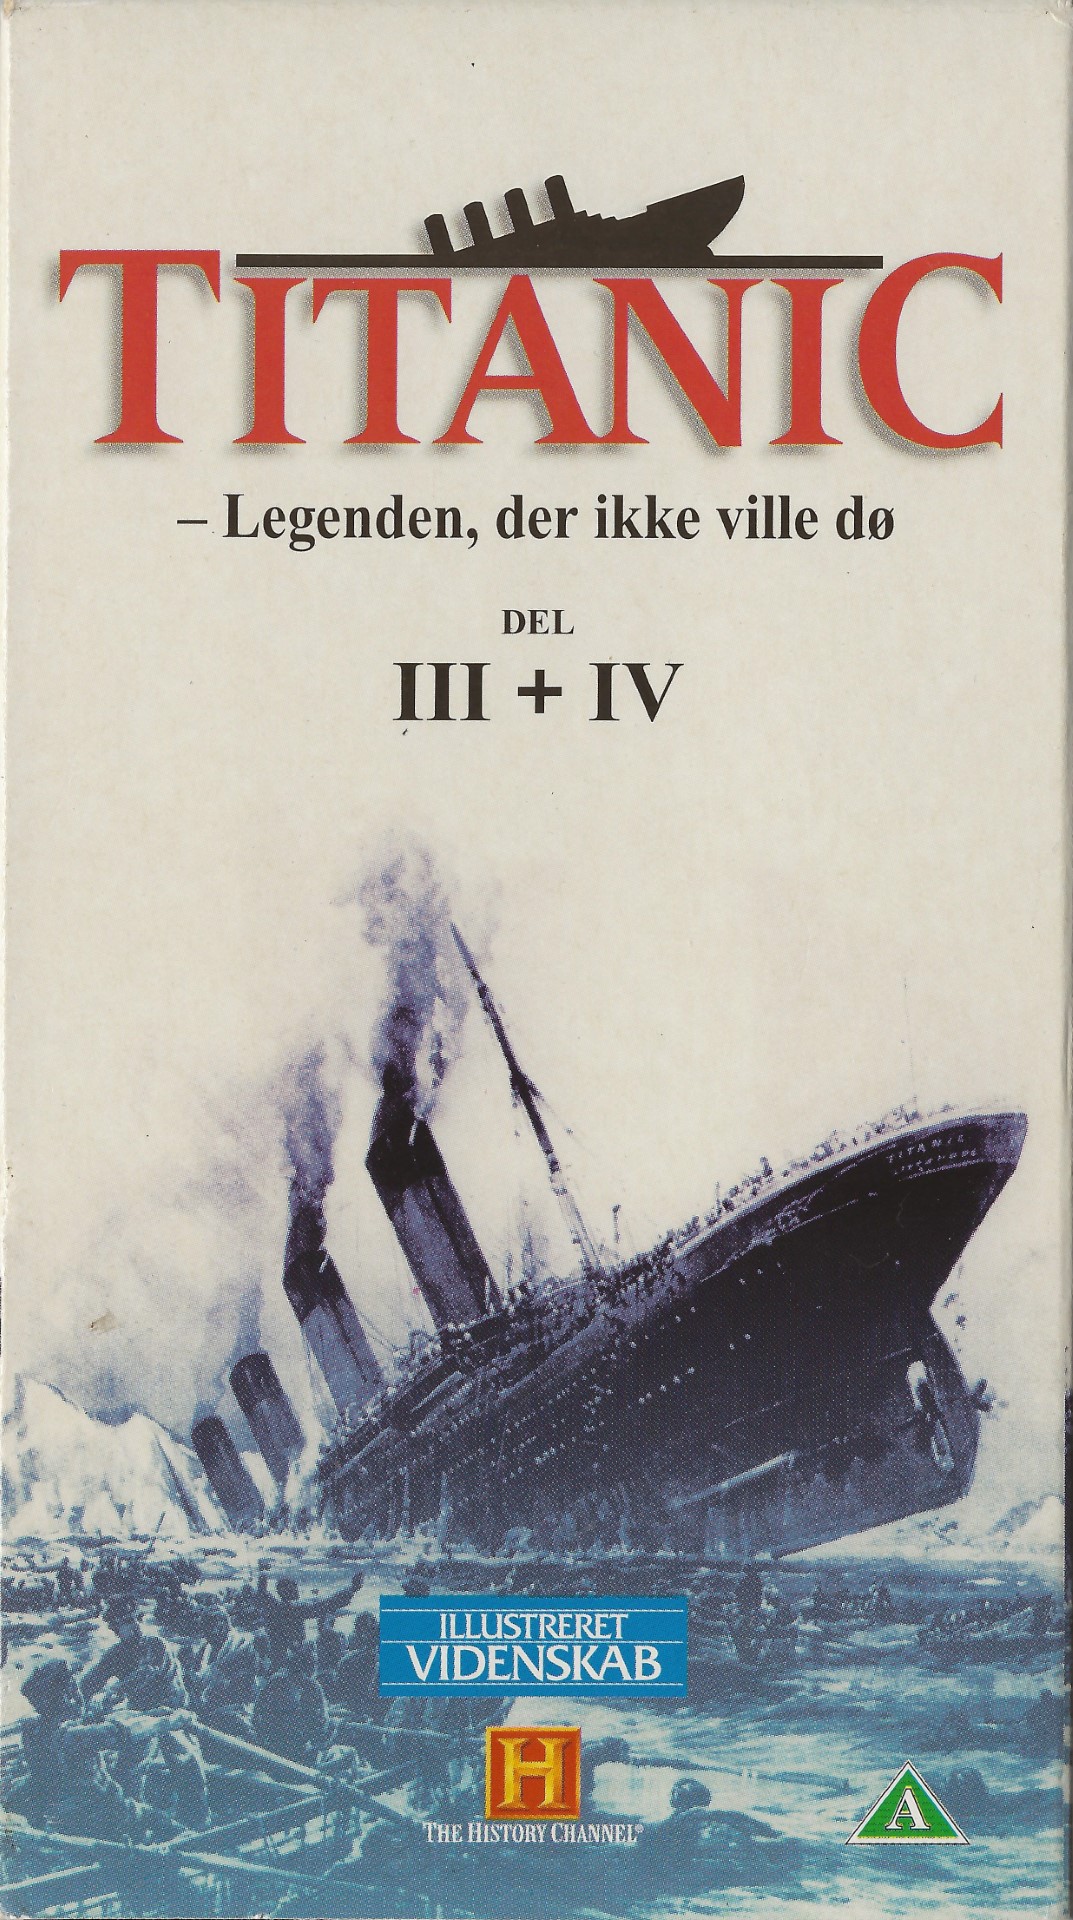 Titanic - Legenden, der ikke ville dø - Del 3 og 4  VHS Illustreret Videnskab 1994